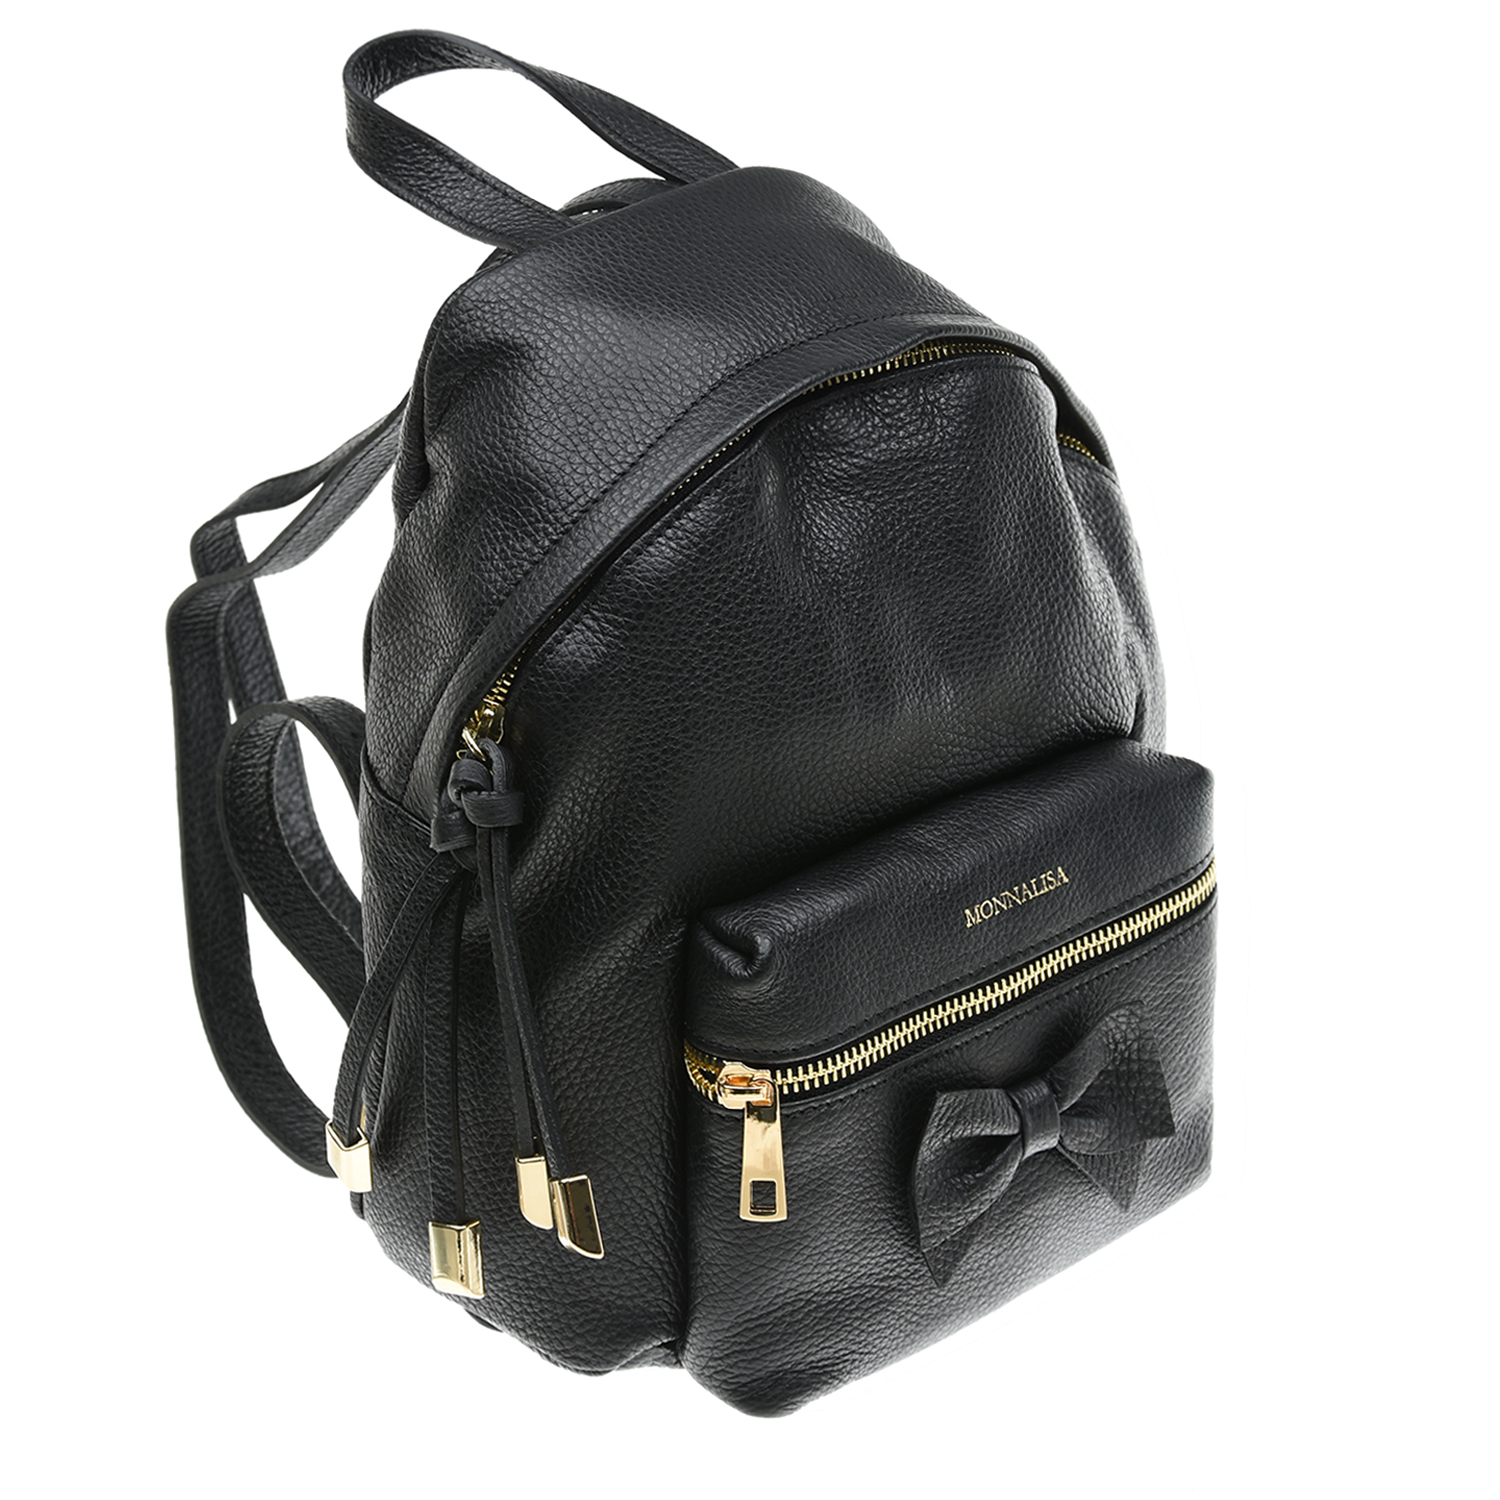 Черный рюкзак с бантом, 21х8х27 см Monnalisa детский, размер unica - фото 2